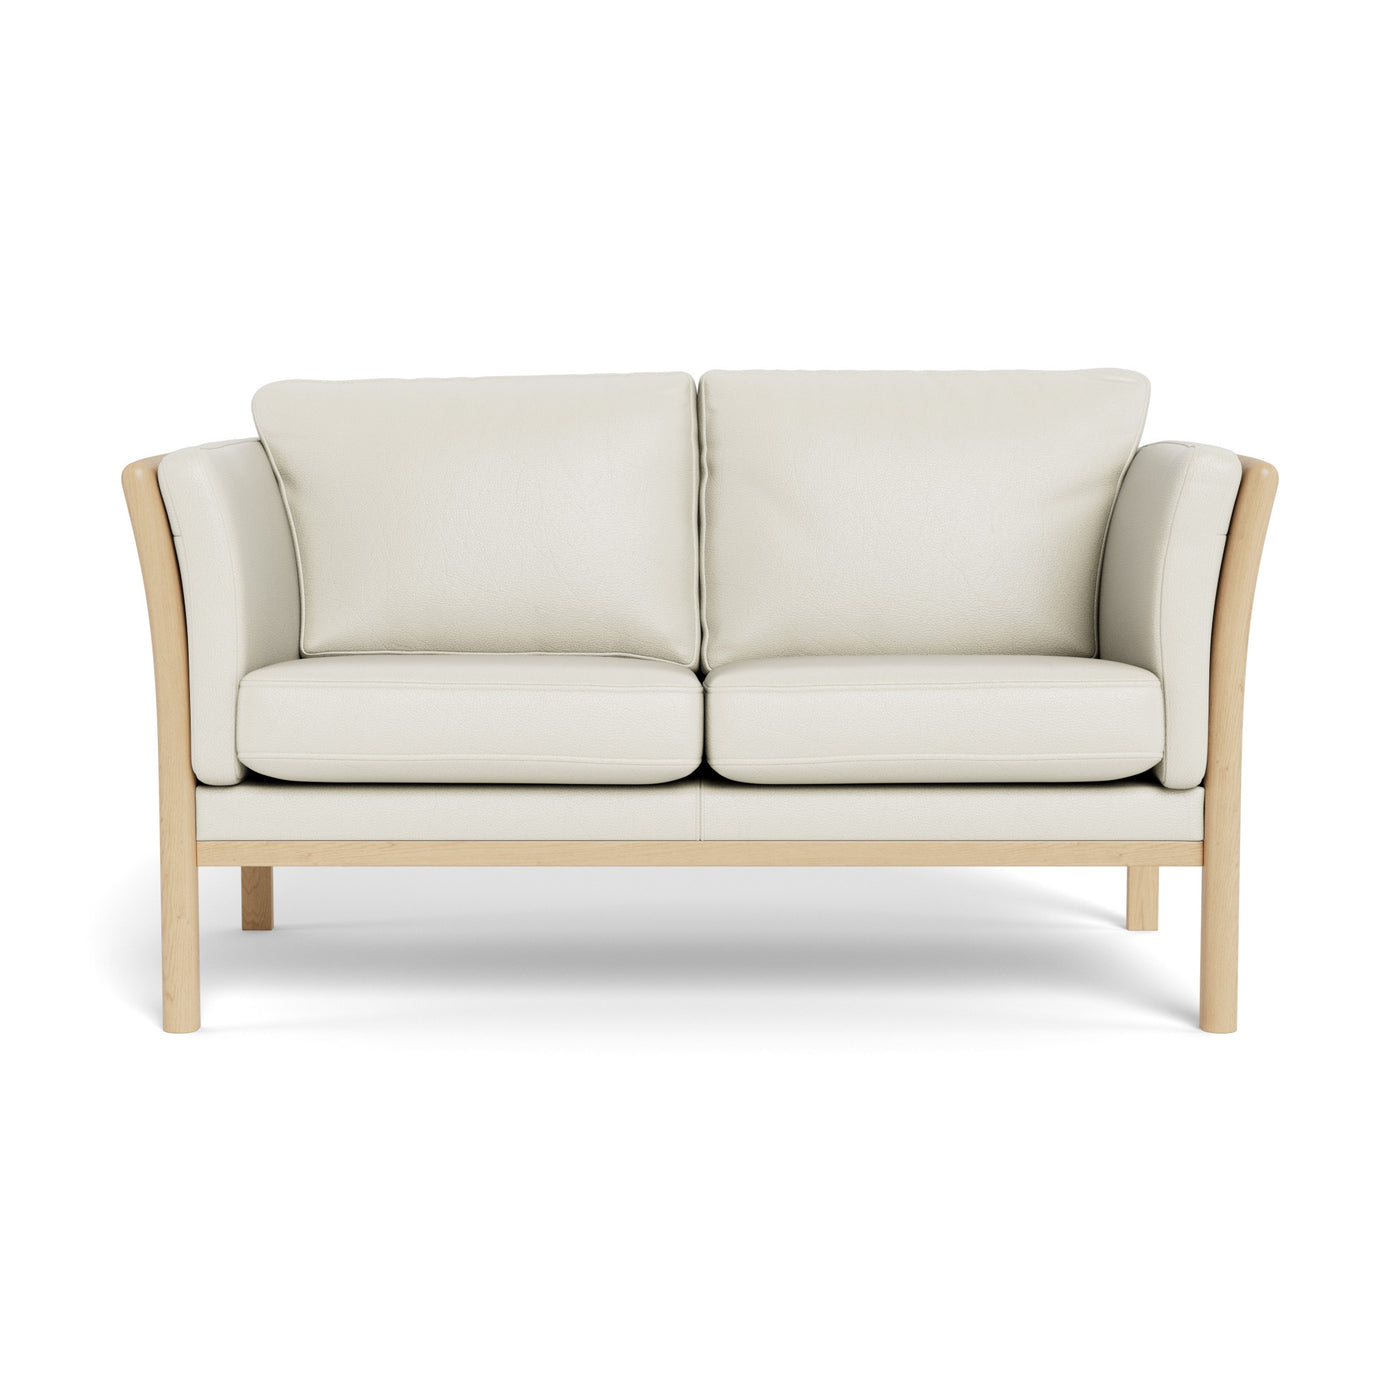 Rosenholm | 2-personers sofa